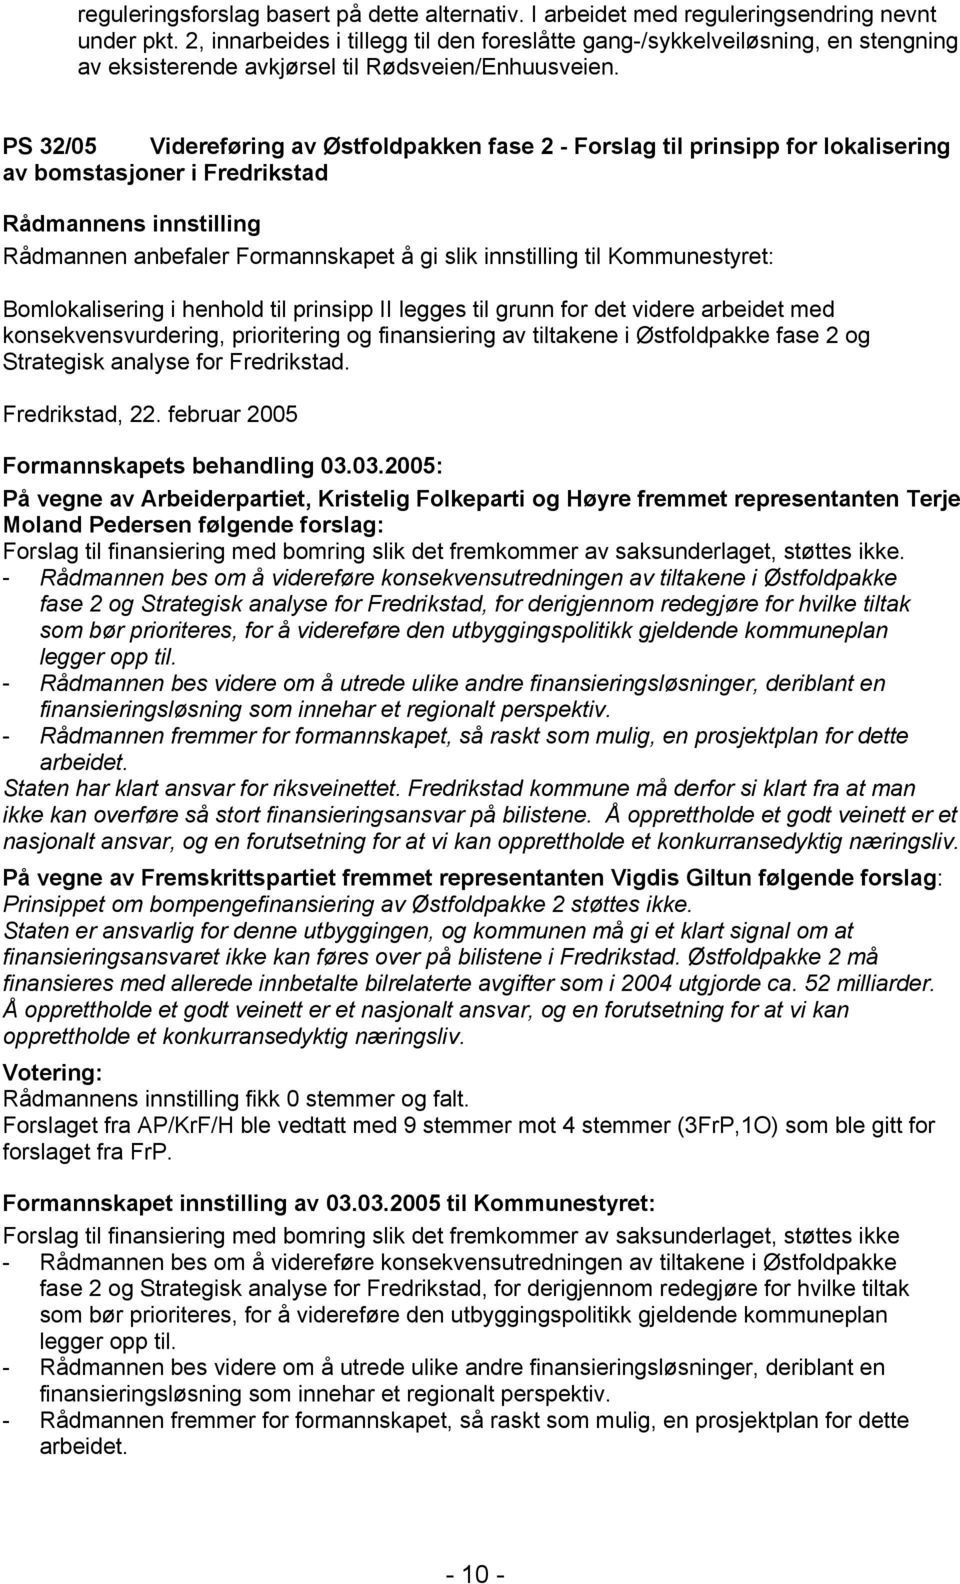 PS 32/05 Videreføring av Østfoldpakken fase 2 - Forslag til prinsipp for lokalisering av bomstasjoner i Fredrikstad Rådmannen anbefaler Formannskapet å gi slik innstilling til Kommunestyret: